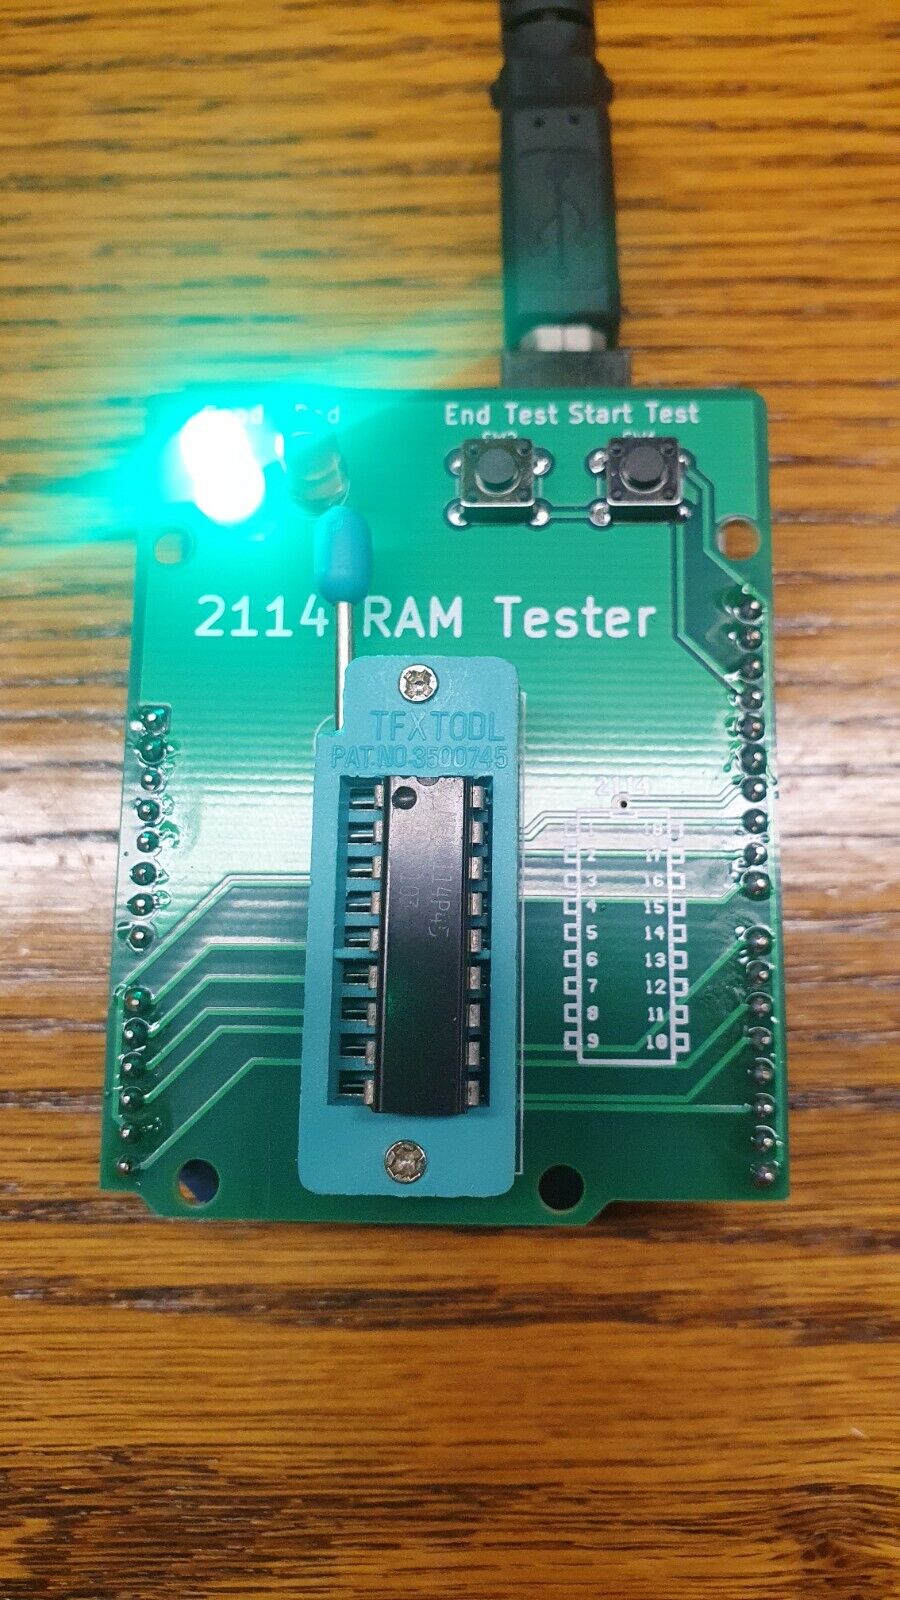 RAM Memory Tester Kit PCB for Arduino - Test 2114 & 9114 chips